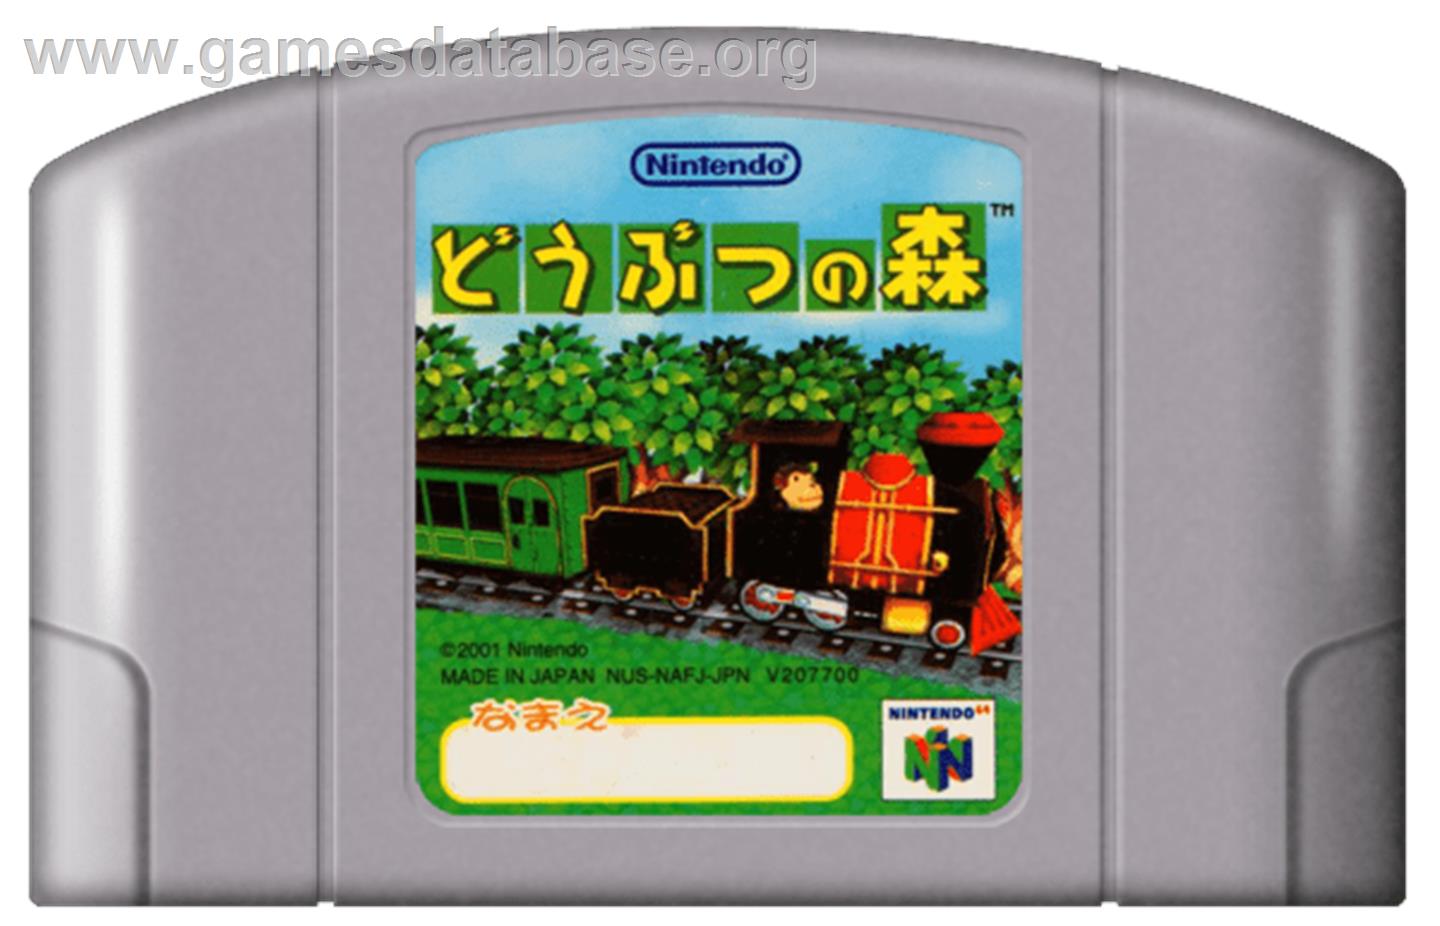 Doubutsu no Mori - Nintendo N64 - Artwork - Cartridge